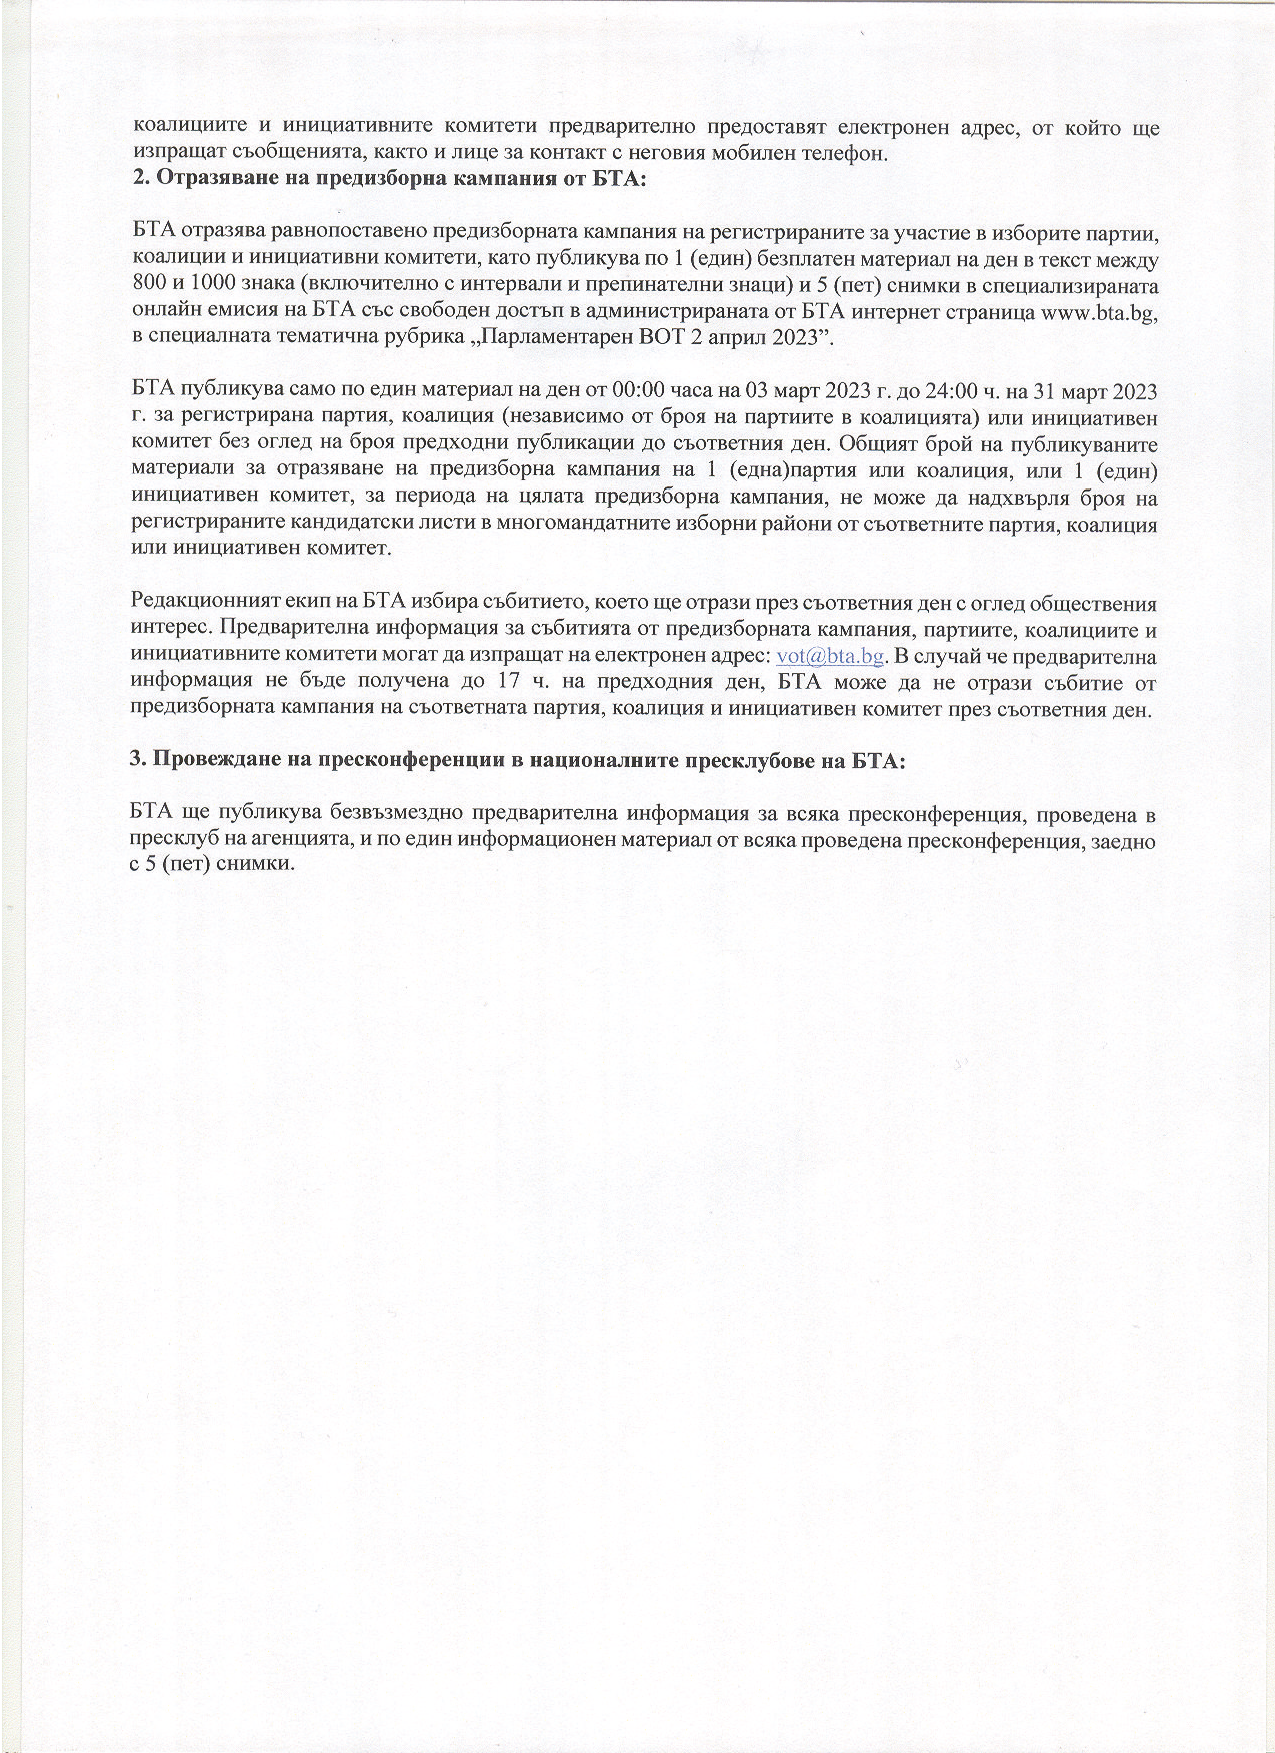 ВОТ - Ред и условия на БТА за отразяване на предизборната кампания за изборите за народни представители на 02.04.2023 г.